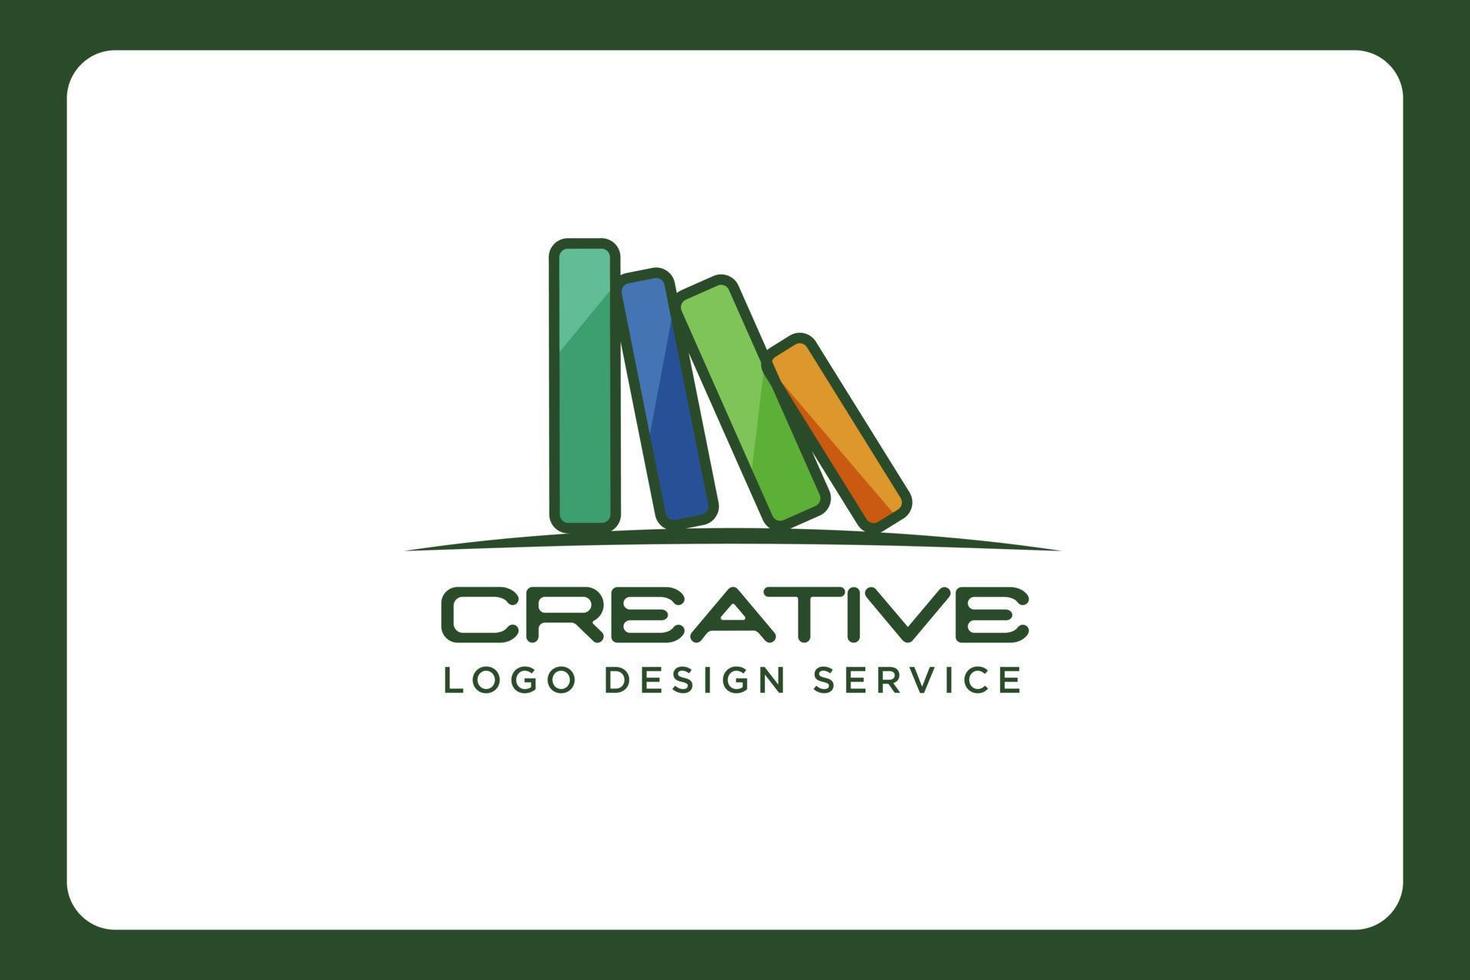 Bookshelf logo, book logo, bookstall logo or library logo vector